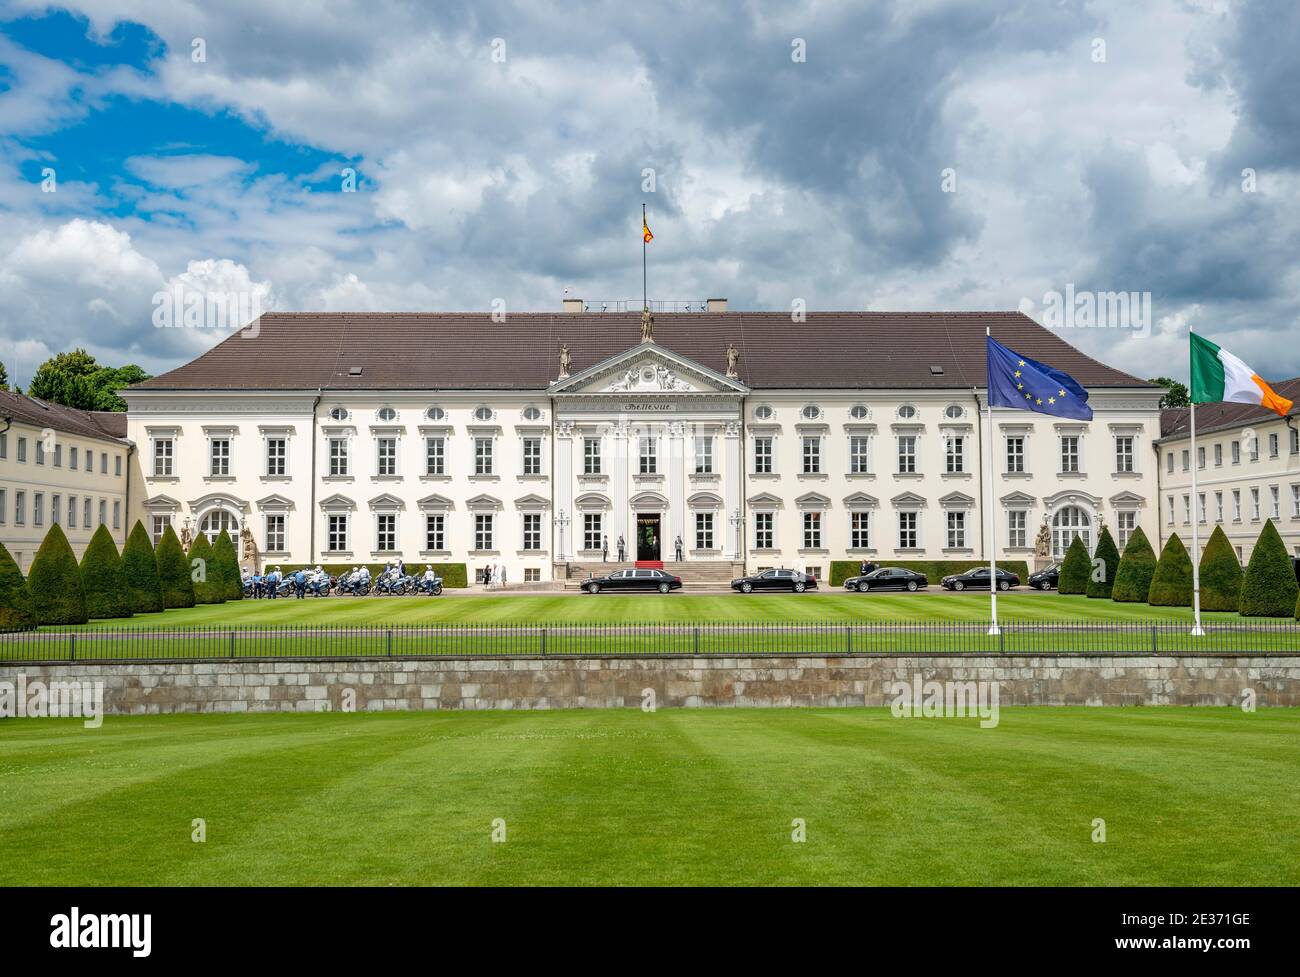 Schloss Bellevue mit europäischer und irischer Flagge, offizielle Residenz des Bundespräsidenten, Berlin, Deutschland Stockfoto